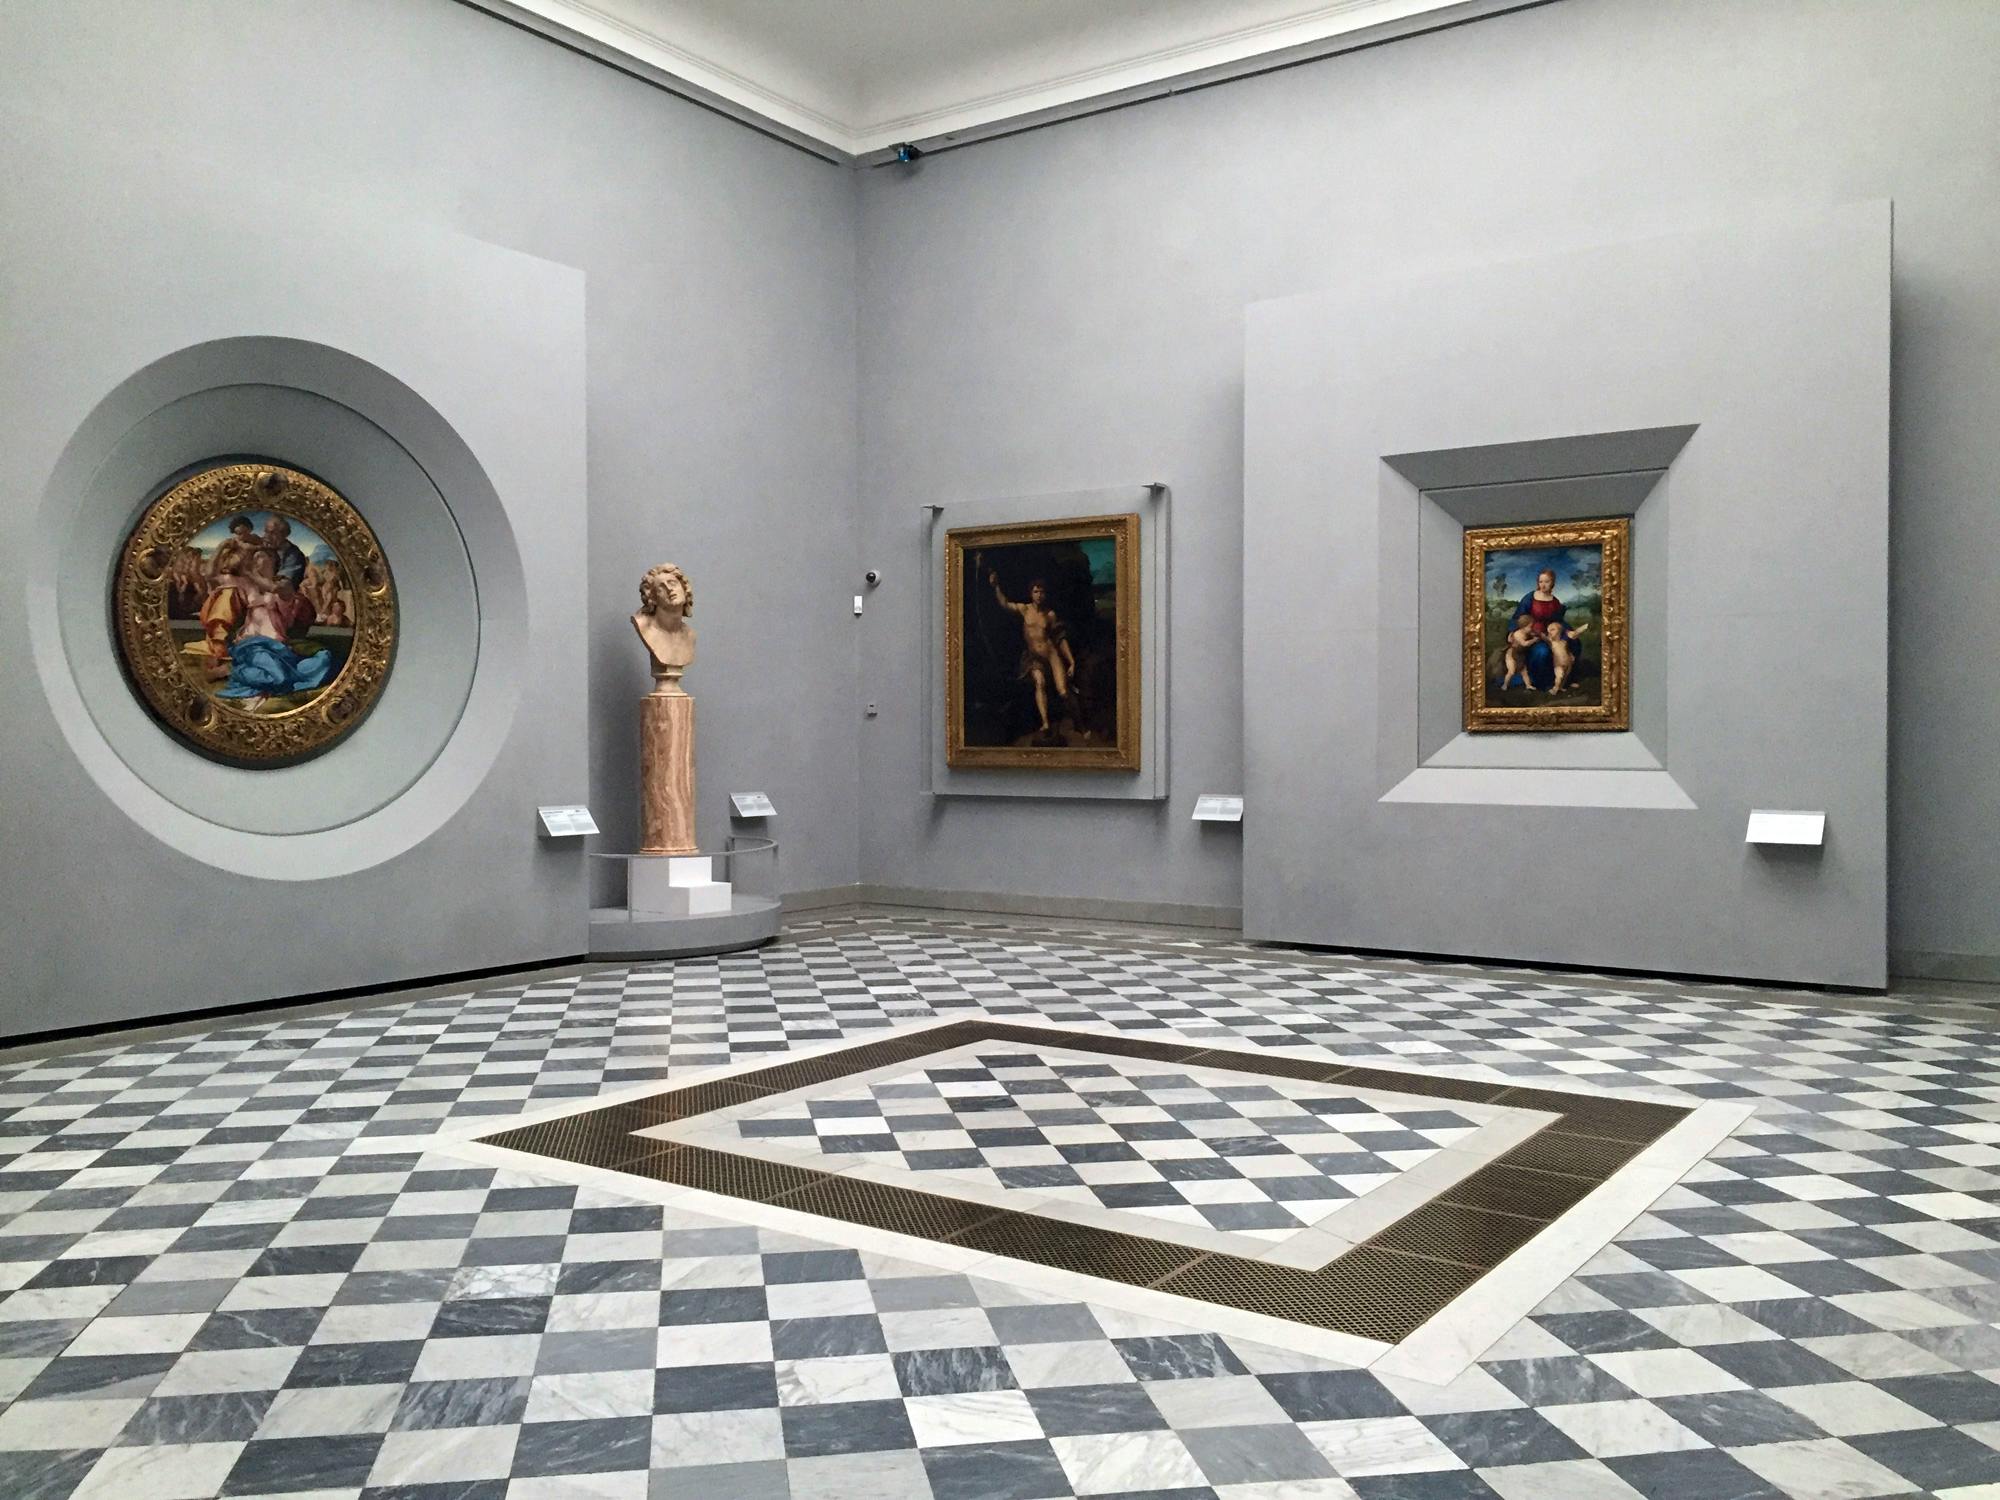 Uffizi Gallery: Galleria degli Uffizi in Florence, Italy